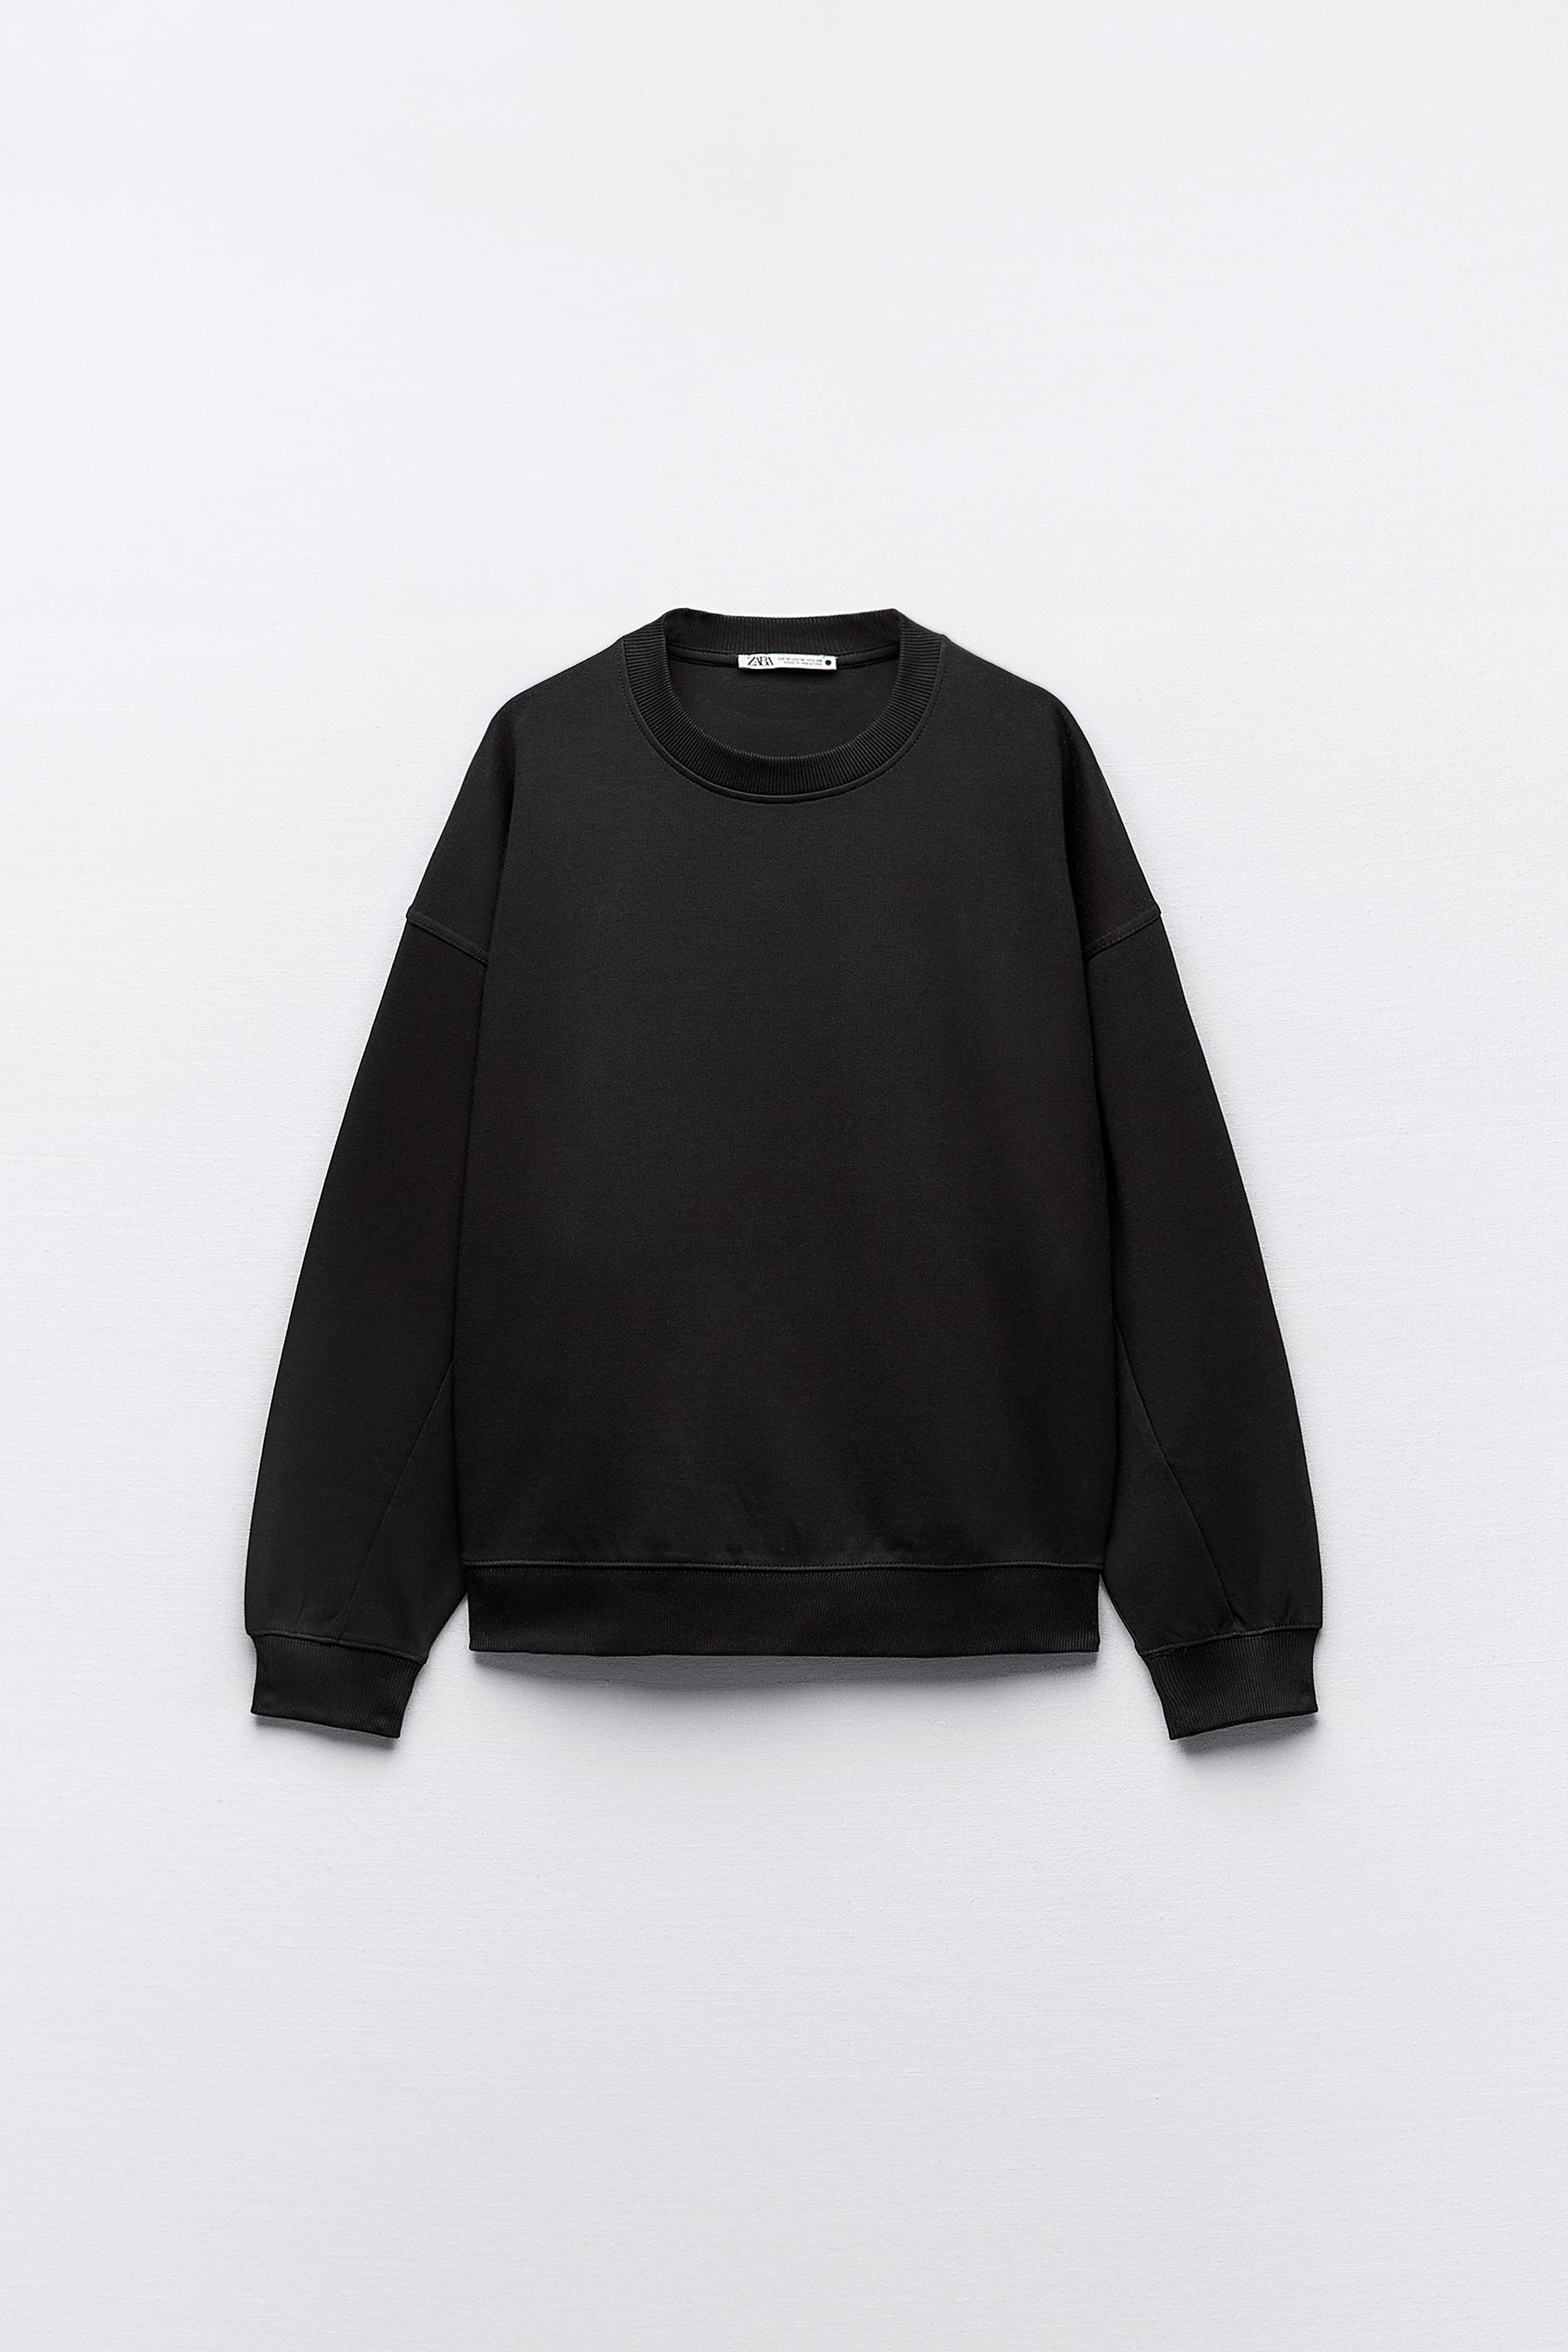 ブラックスウェットシャツ- レディース | 最新コレクション | ZARA 日本